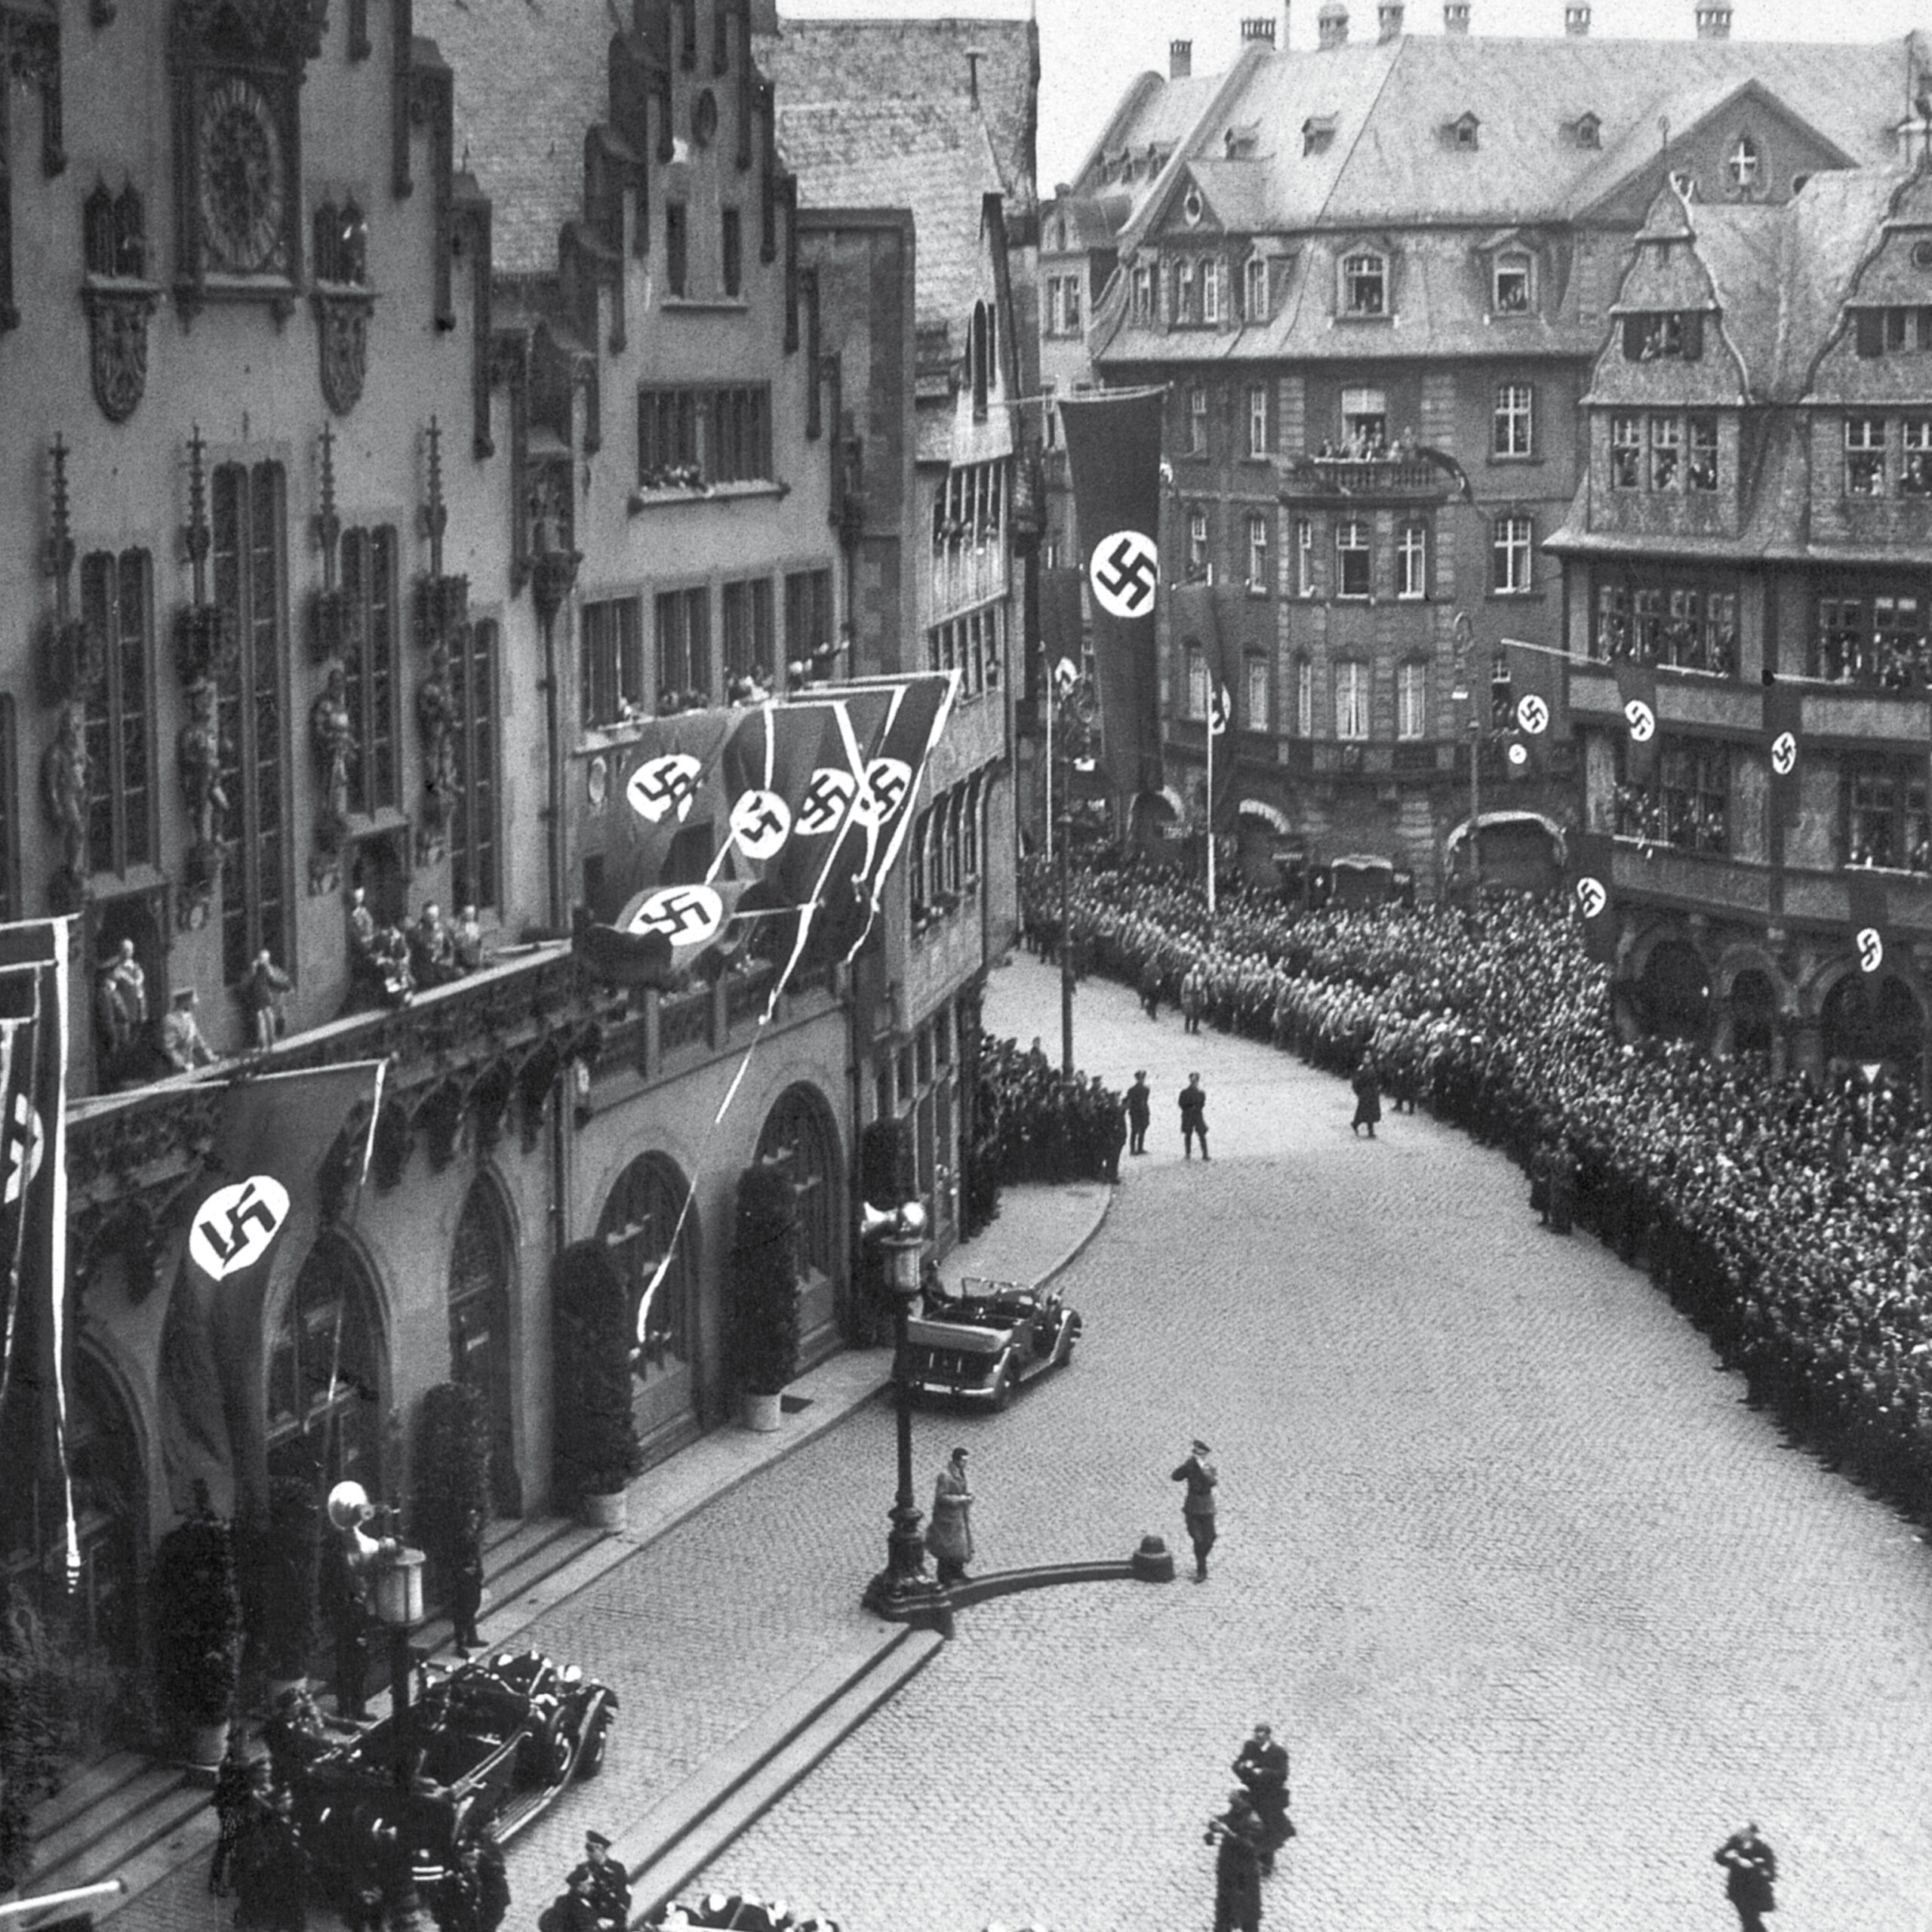 NSDAP rally on the Römerberg around 1933